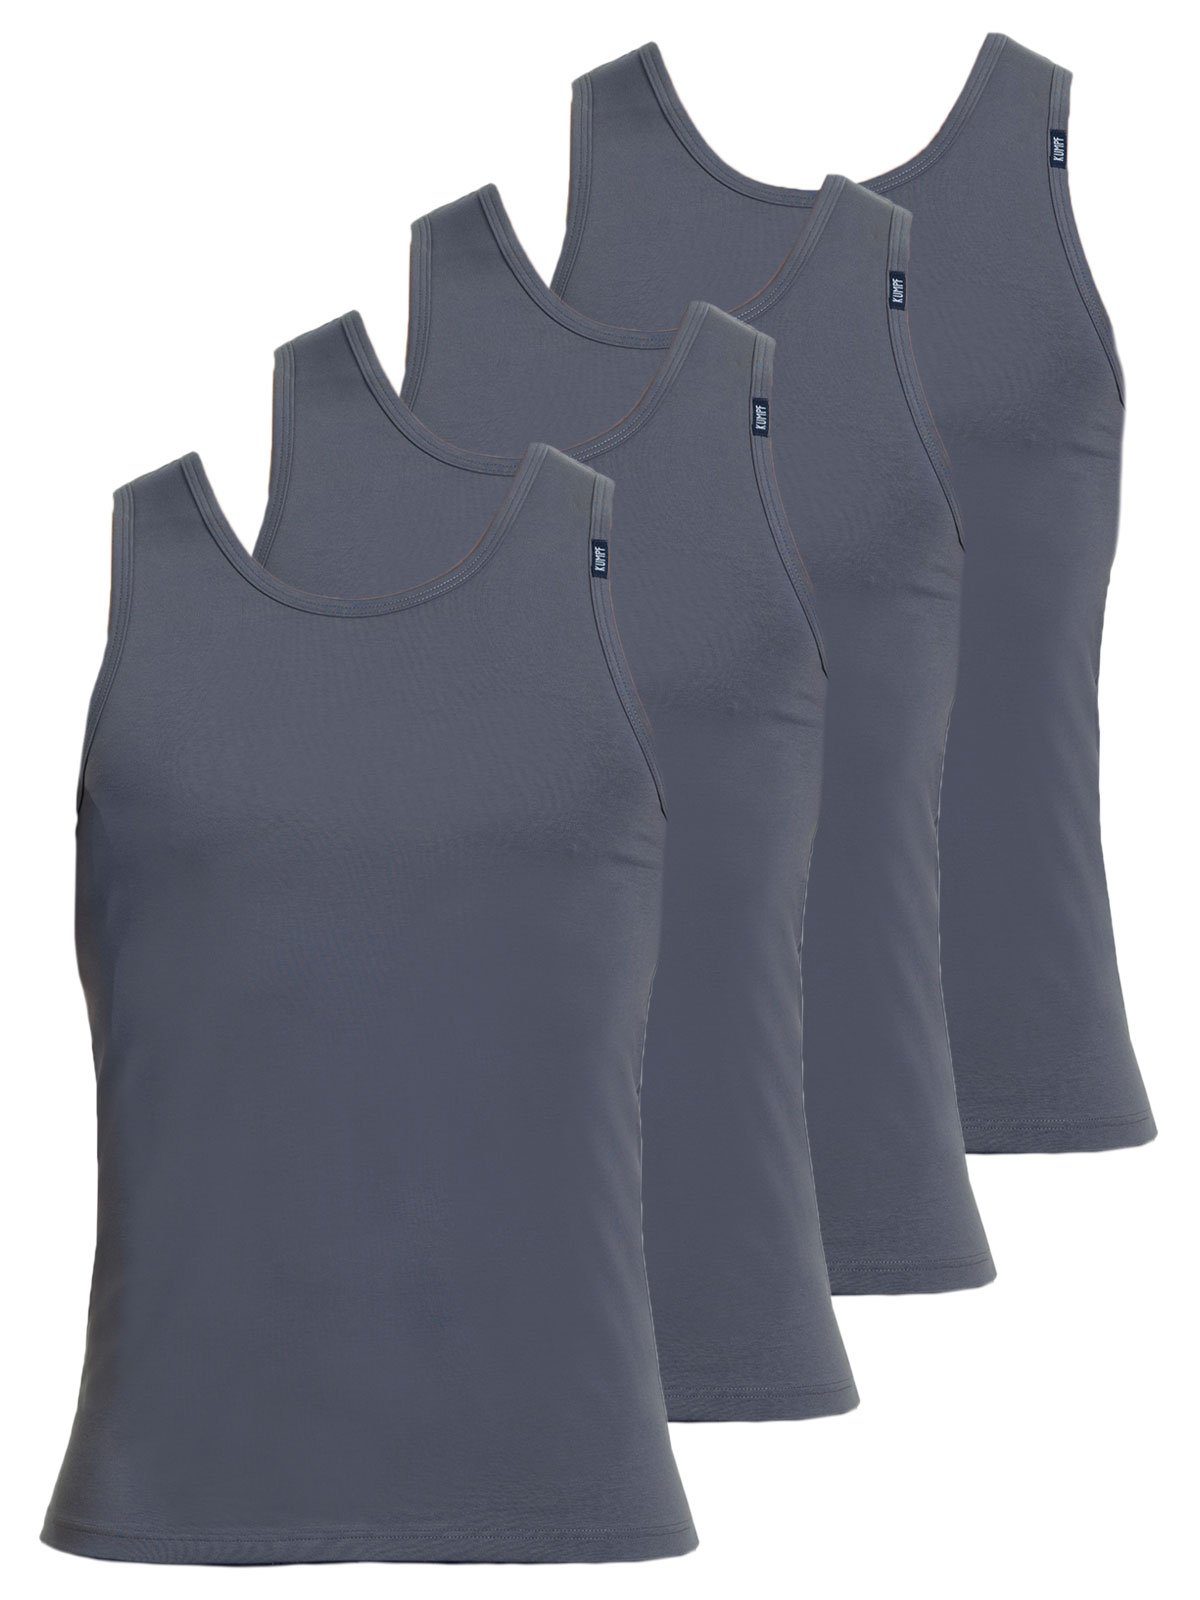 KUMPF Achselhemd 4er Sparpack Herren Unterhemd Bio Cotton (Spar-Set, 4-St) hohe Markenqualität mittelgrau